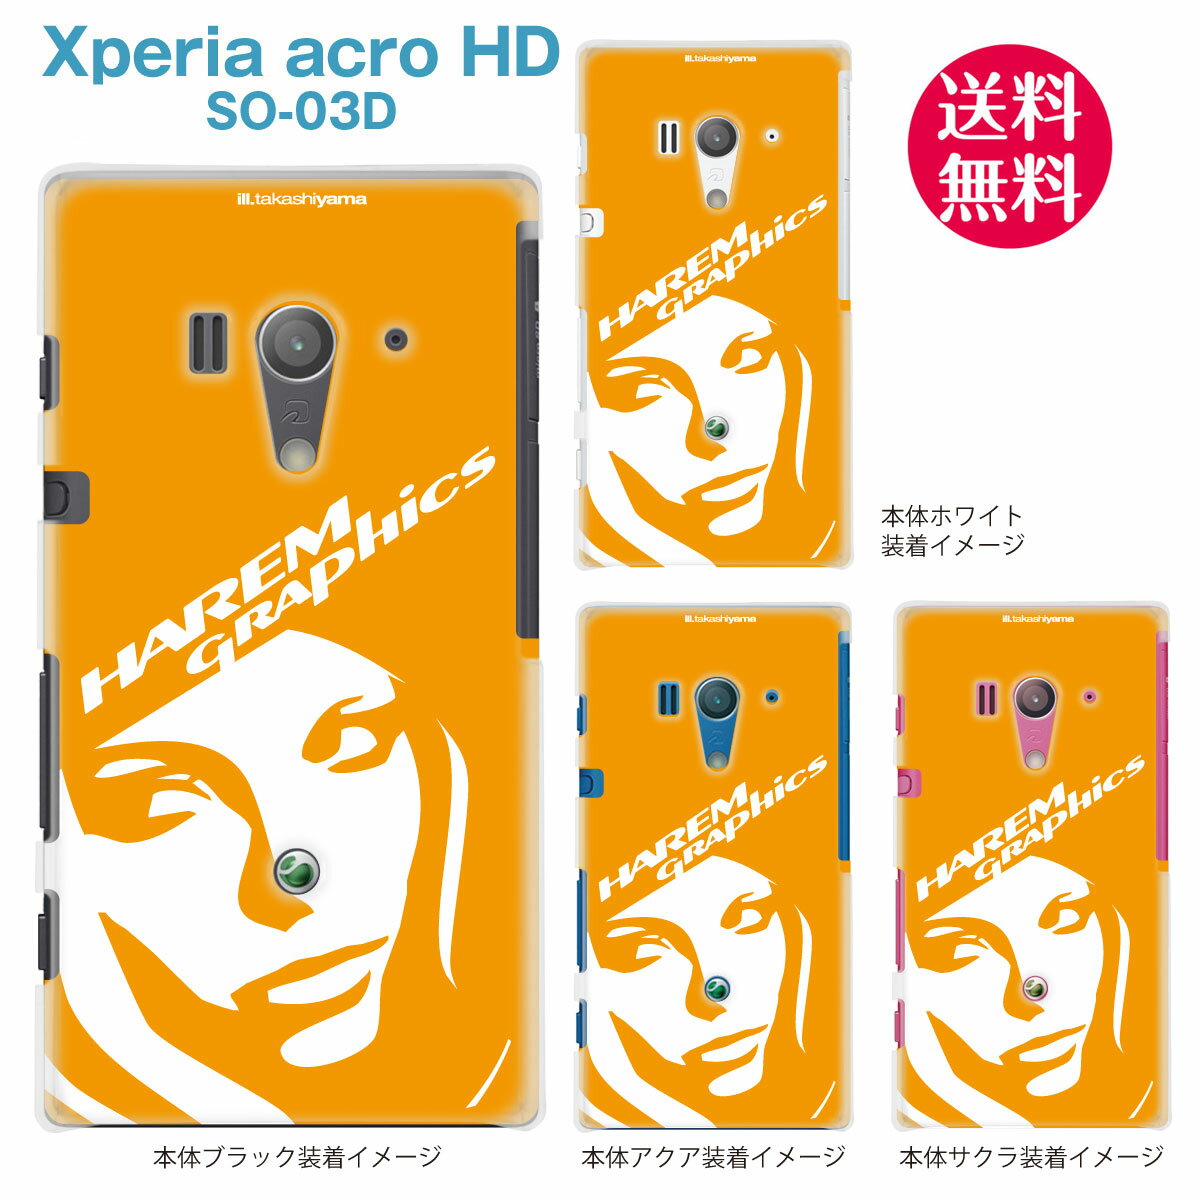 【HAREM GRAPHICS】【Xperia acro HD SO-03D】【docomo】【au】【IS12S】【ケース】【カバー】【スマホケース】【クリアケース】　hgx-so03d-021g